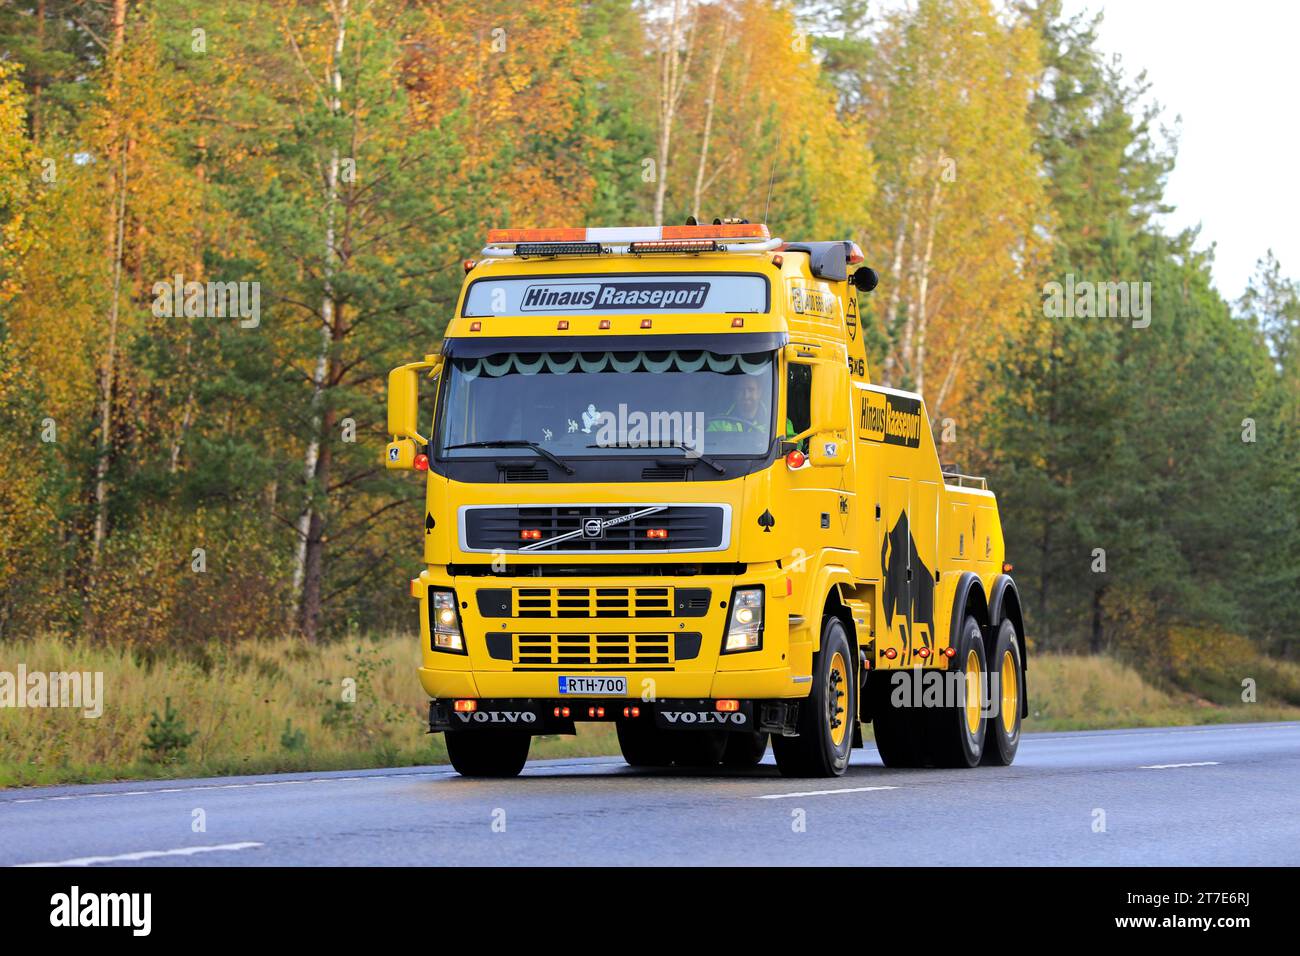 Veicolo di recupero per impieghi pesanti Volvo FH giallo per il traino di semirimorchi di Hinaus Raasepori in autostrada in autunno. Raasepori, Finlandia. 13 ottobre 2023. Foto Stock